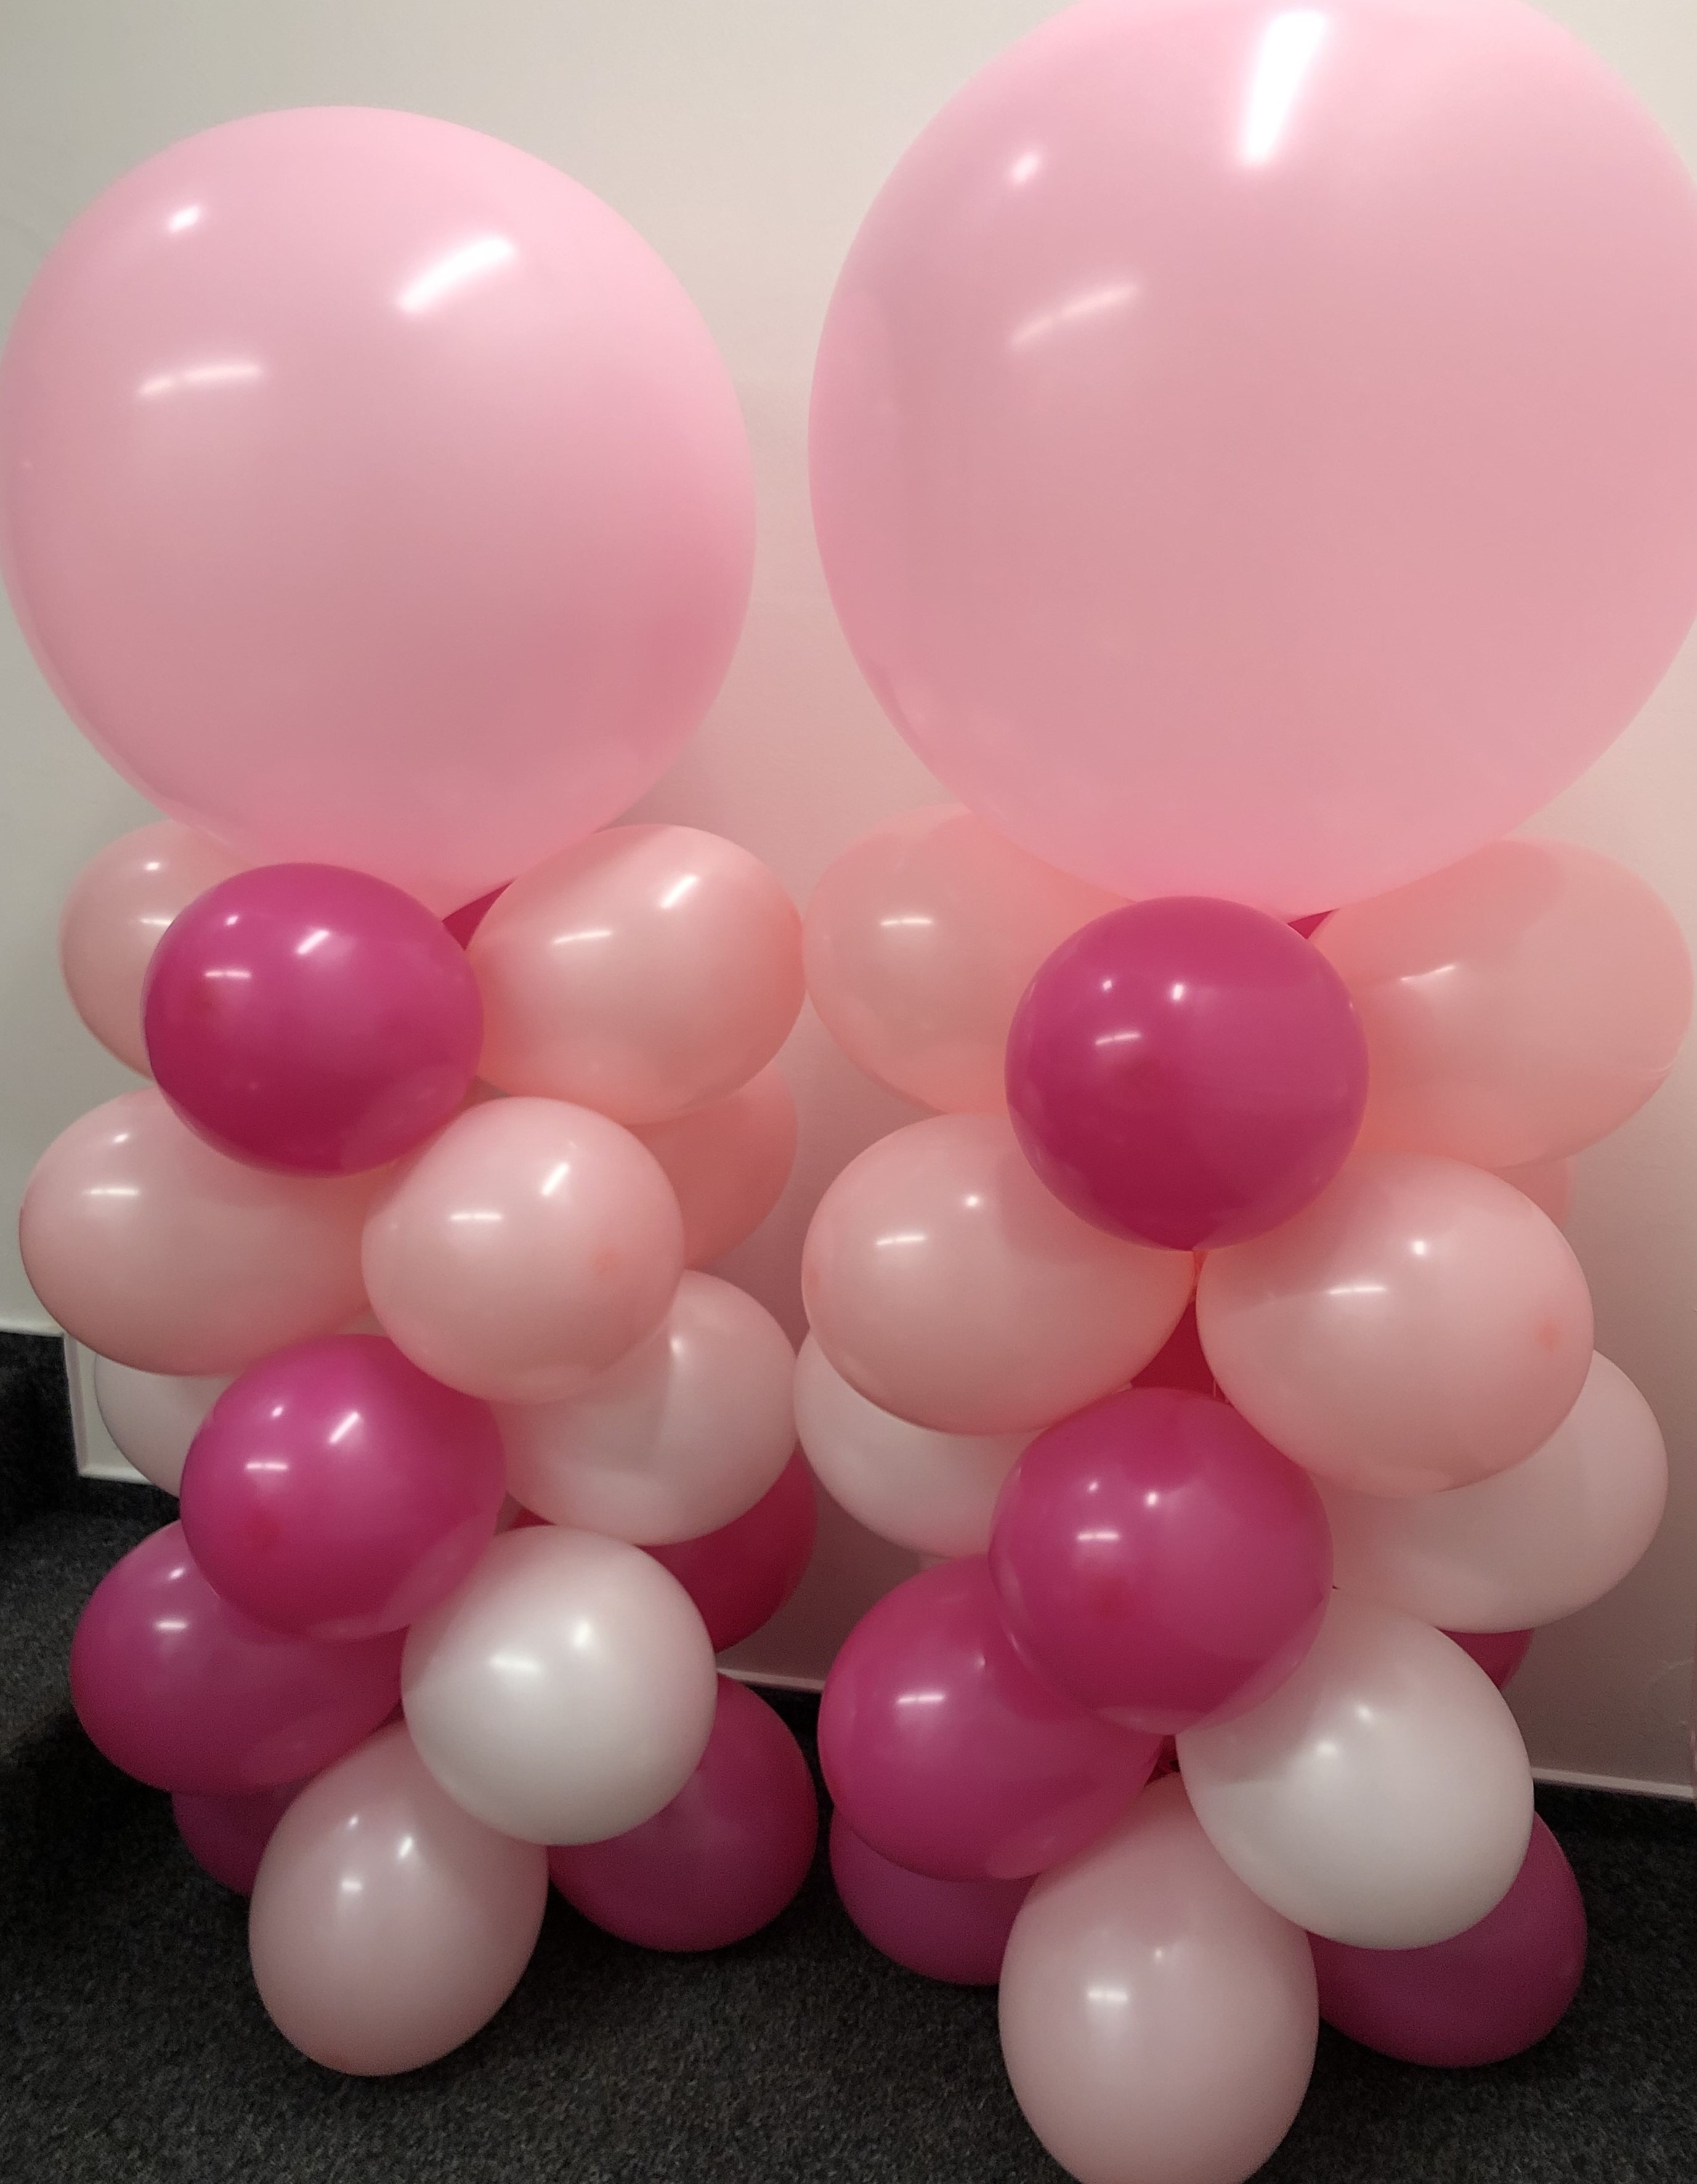 Balónek velký světle růžový 61 cm